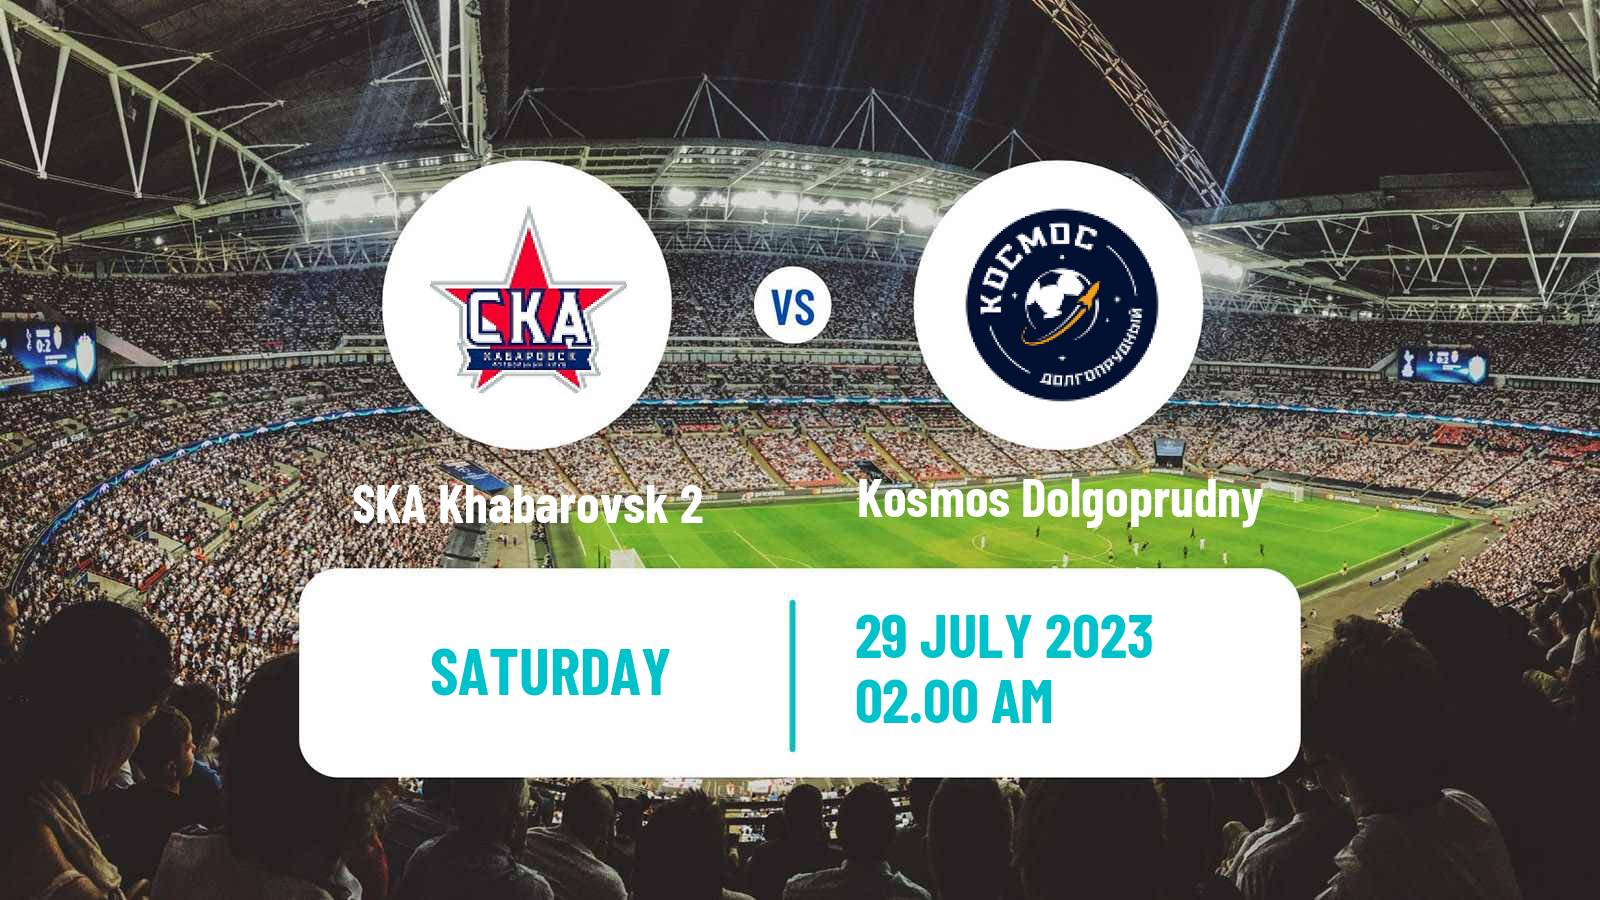 Soccer FNL 2 Division B Group 3 SKA Khabarovsk 2 - Kosmos Dolgoprudny